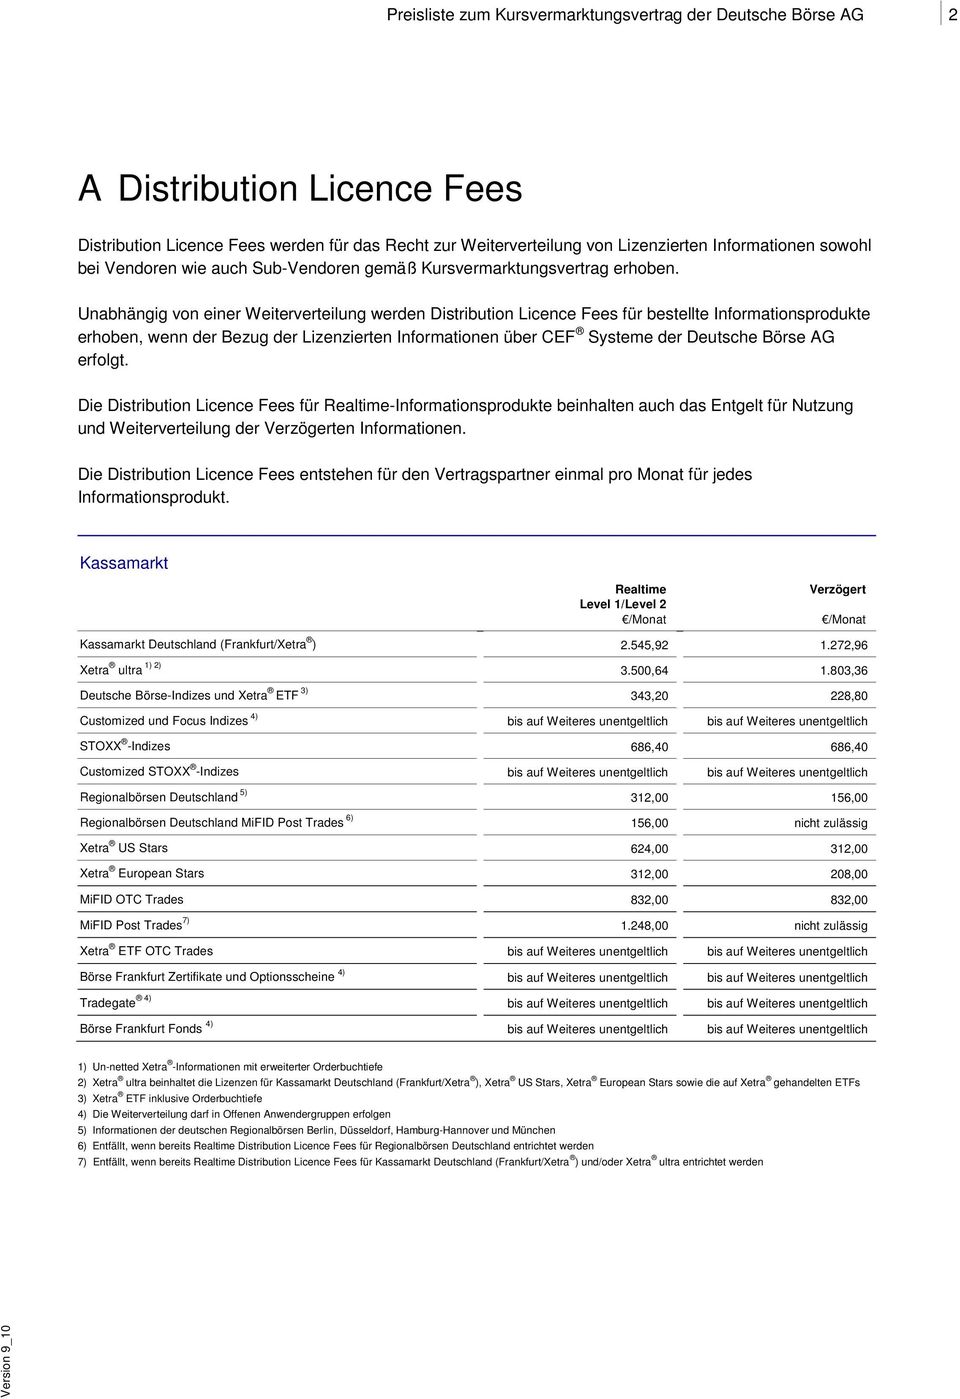 Unabhängig von einer Weiterverteilung werden Distribution Licence Fees für bestellte Informationsprodukte erhoben, wenn der Bezug der Lizenzierten Informationen über CEF Systeme der Deutsche Börse AG